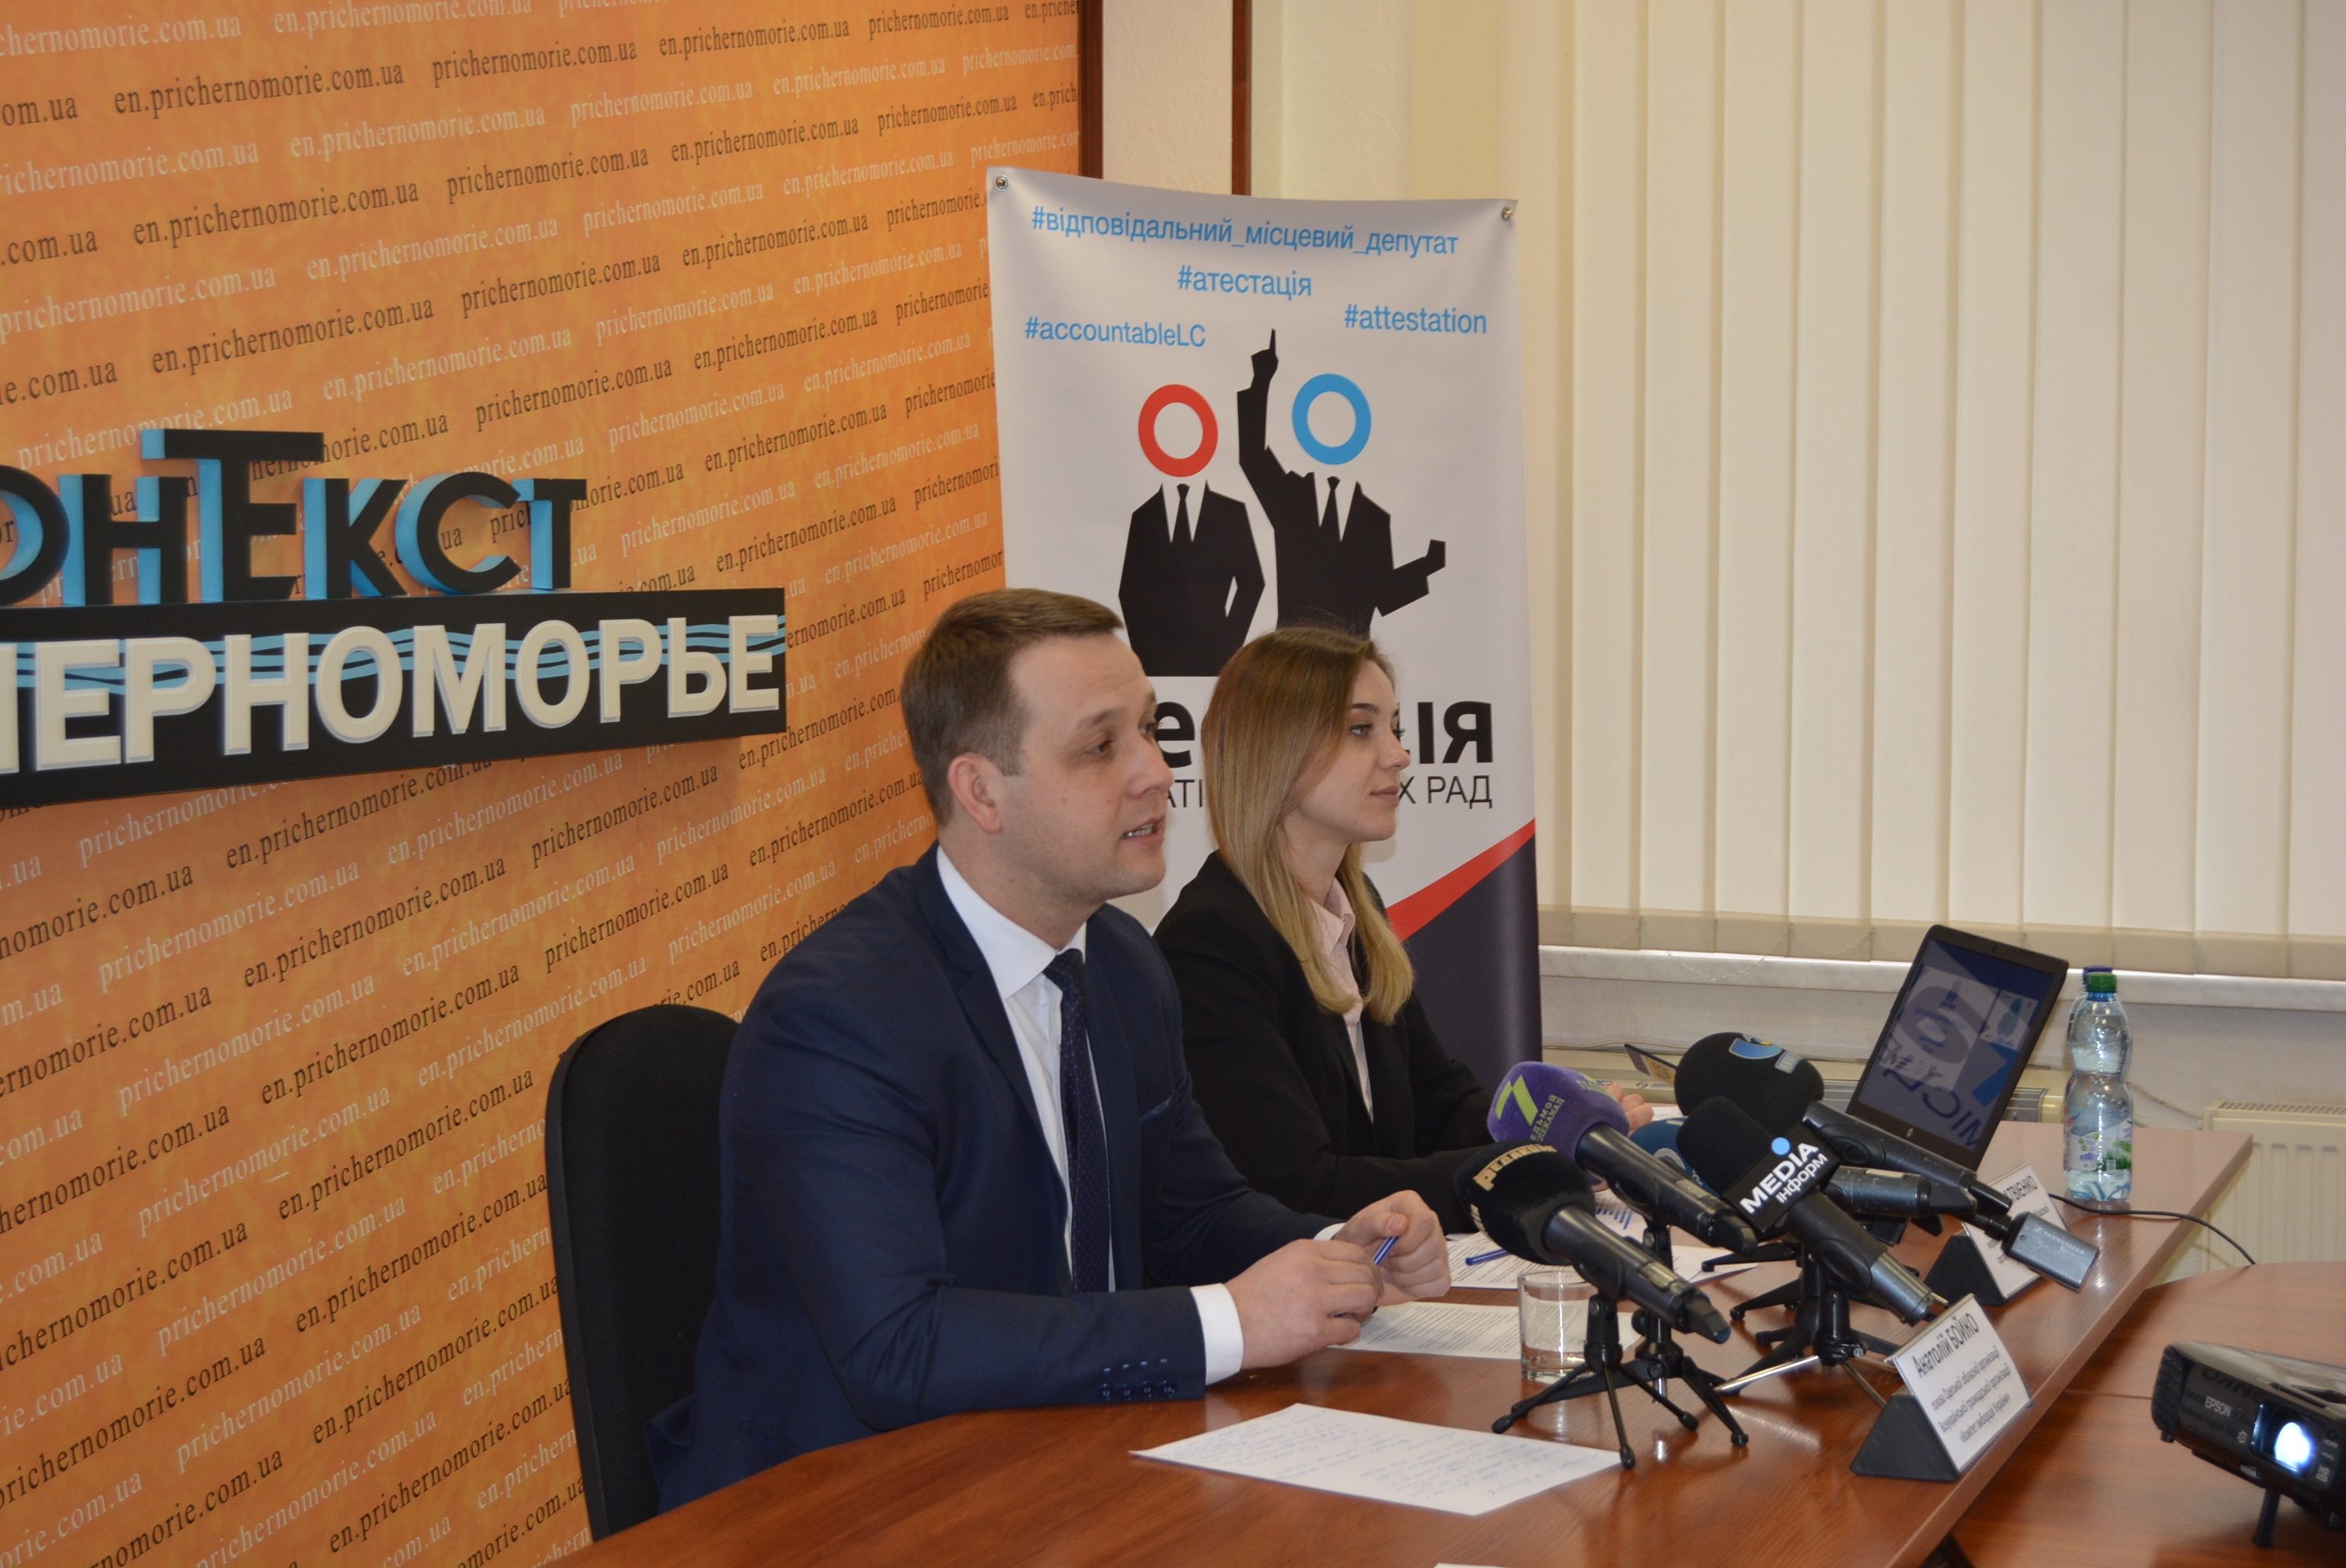 представила результаты мониторинга осуществления приема избирателей и отчетности перед избирателями депутатами Одесского городского совета